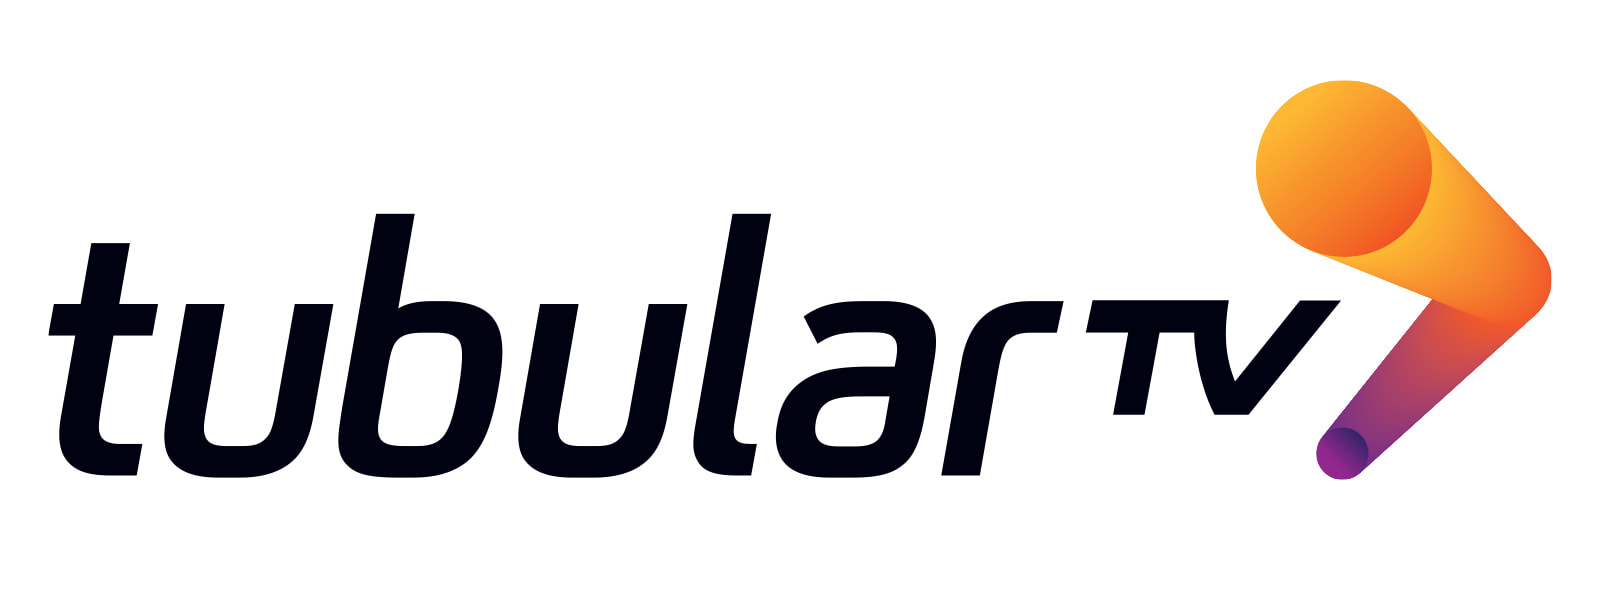 TubularTV logo